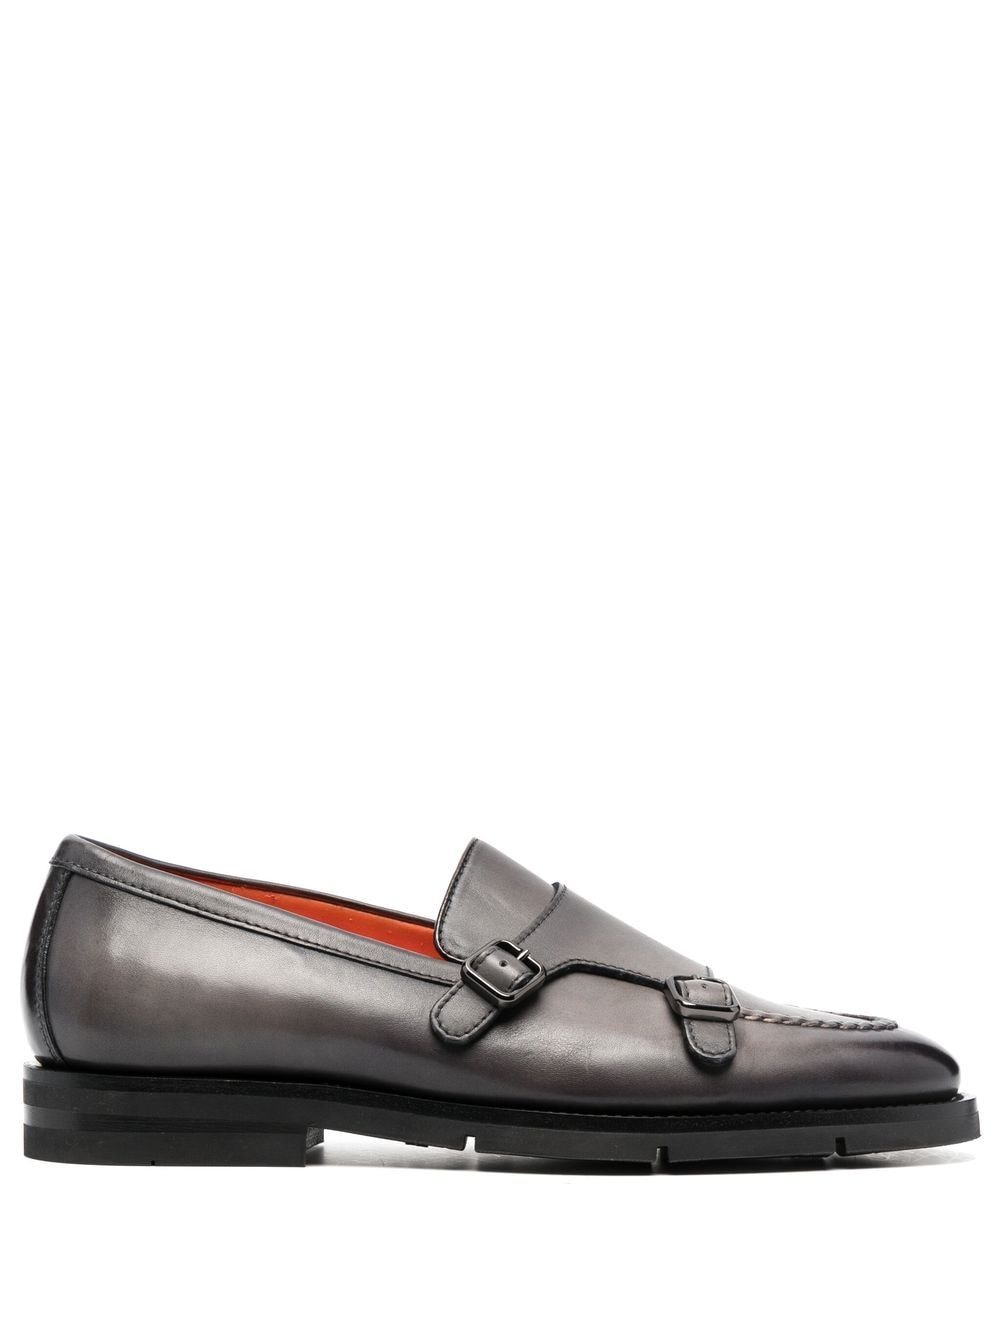 Santoni double-buckle leather monk shoes - Grey von Santoni